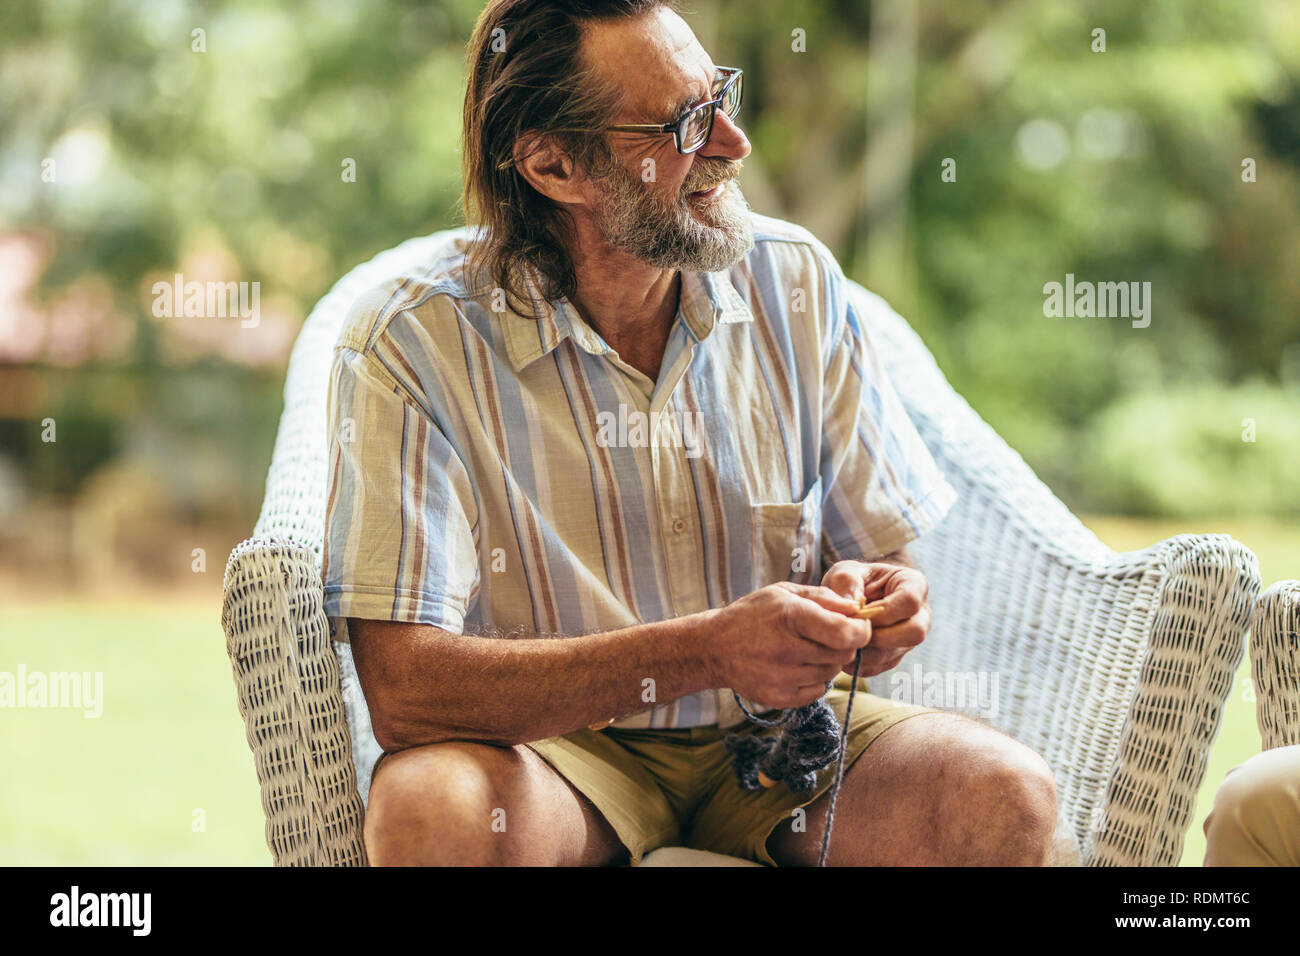 Sorridente uomo vecchio con la barba seduto su una sedia con ago da maglieria e filati di lana. Uomo in pensione rilassante sulla poltrona guardando lontano e sorridente. Foto Stock